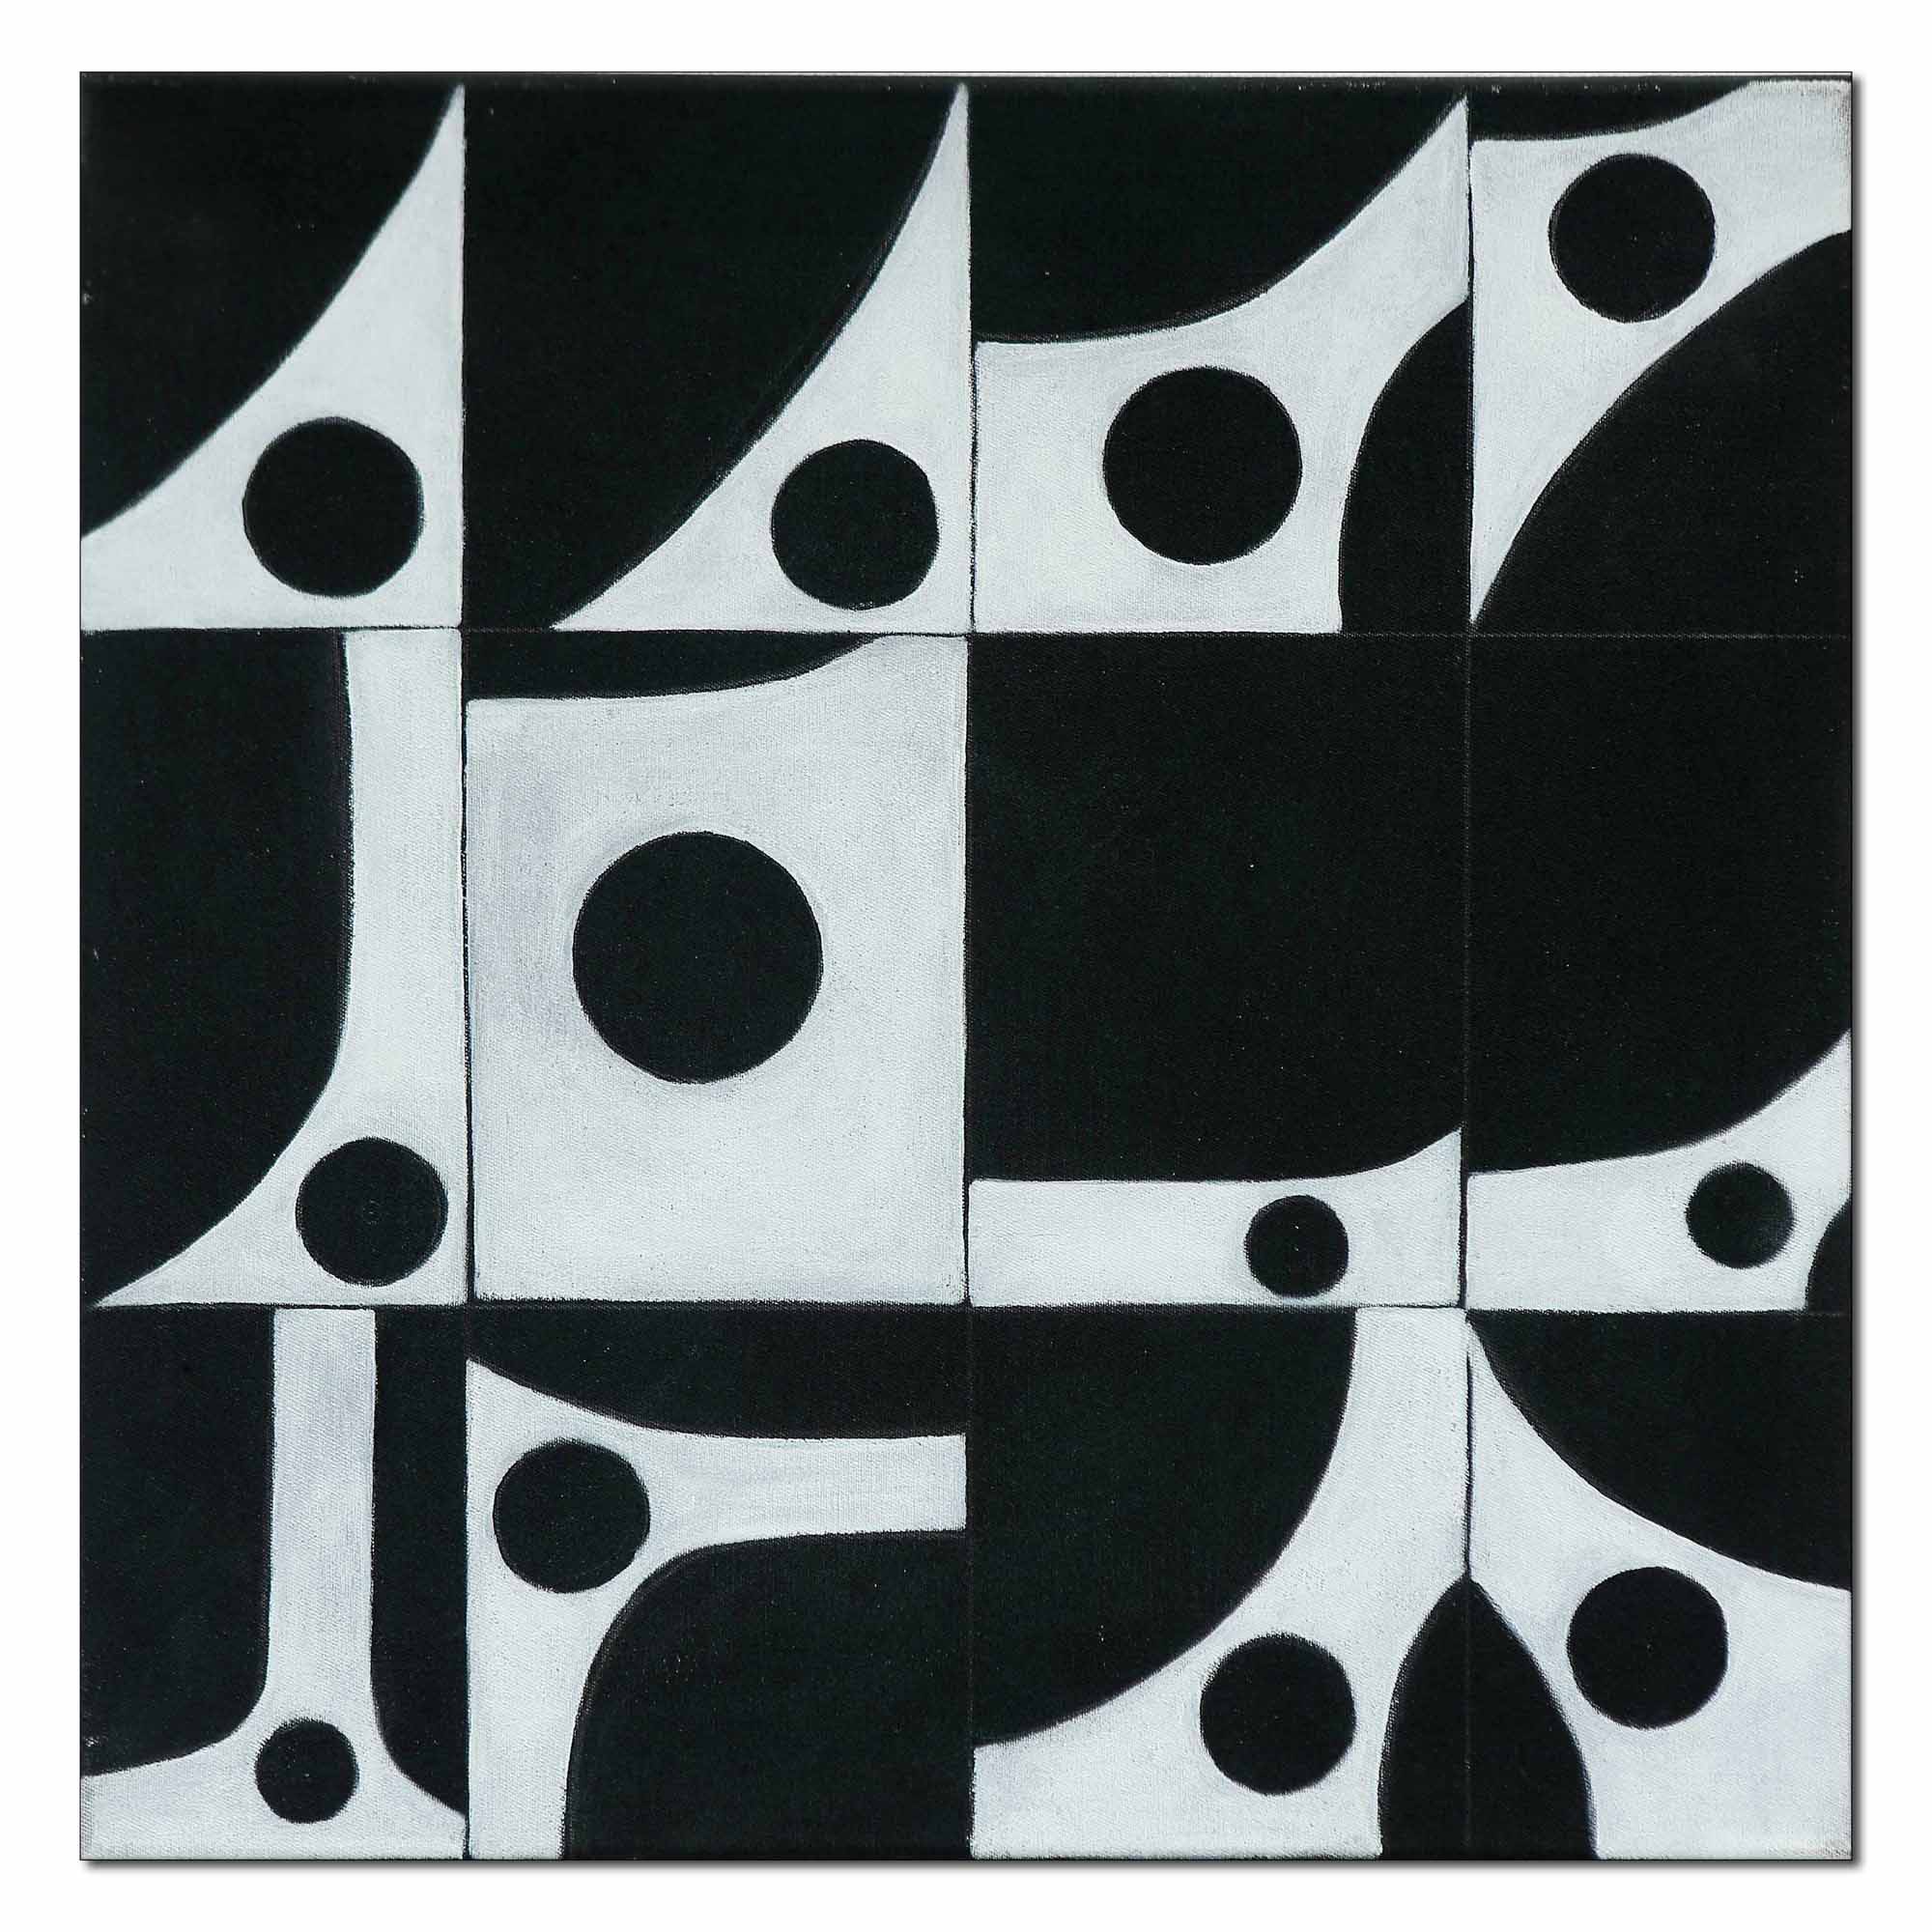 Beeldende aspecten: strak abstract zwart wit schilderij met gebogen lijnen en cirkels, abstract black and white painting with curved lines and circles